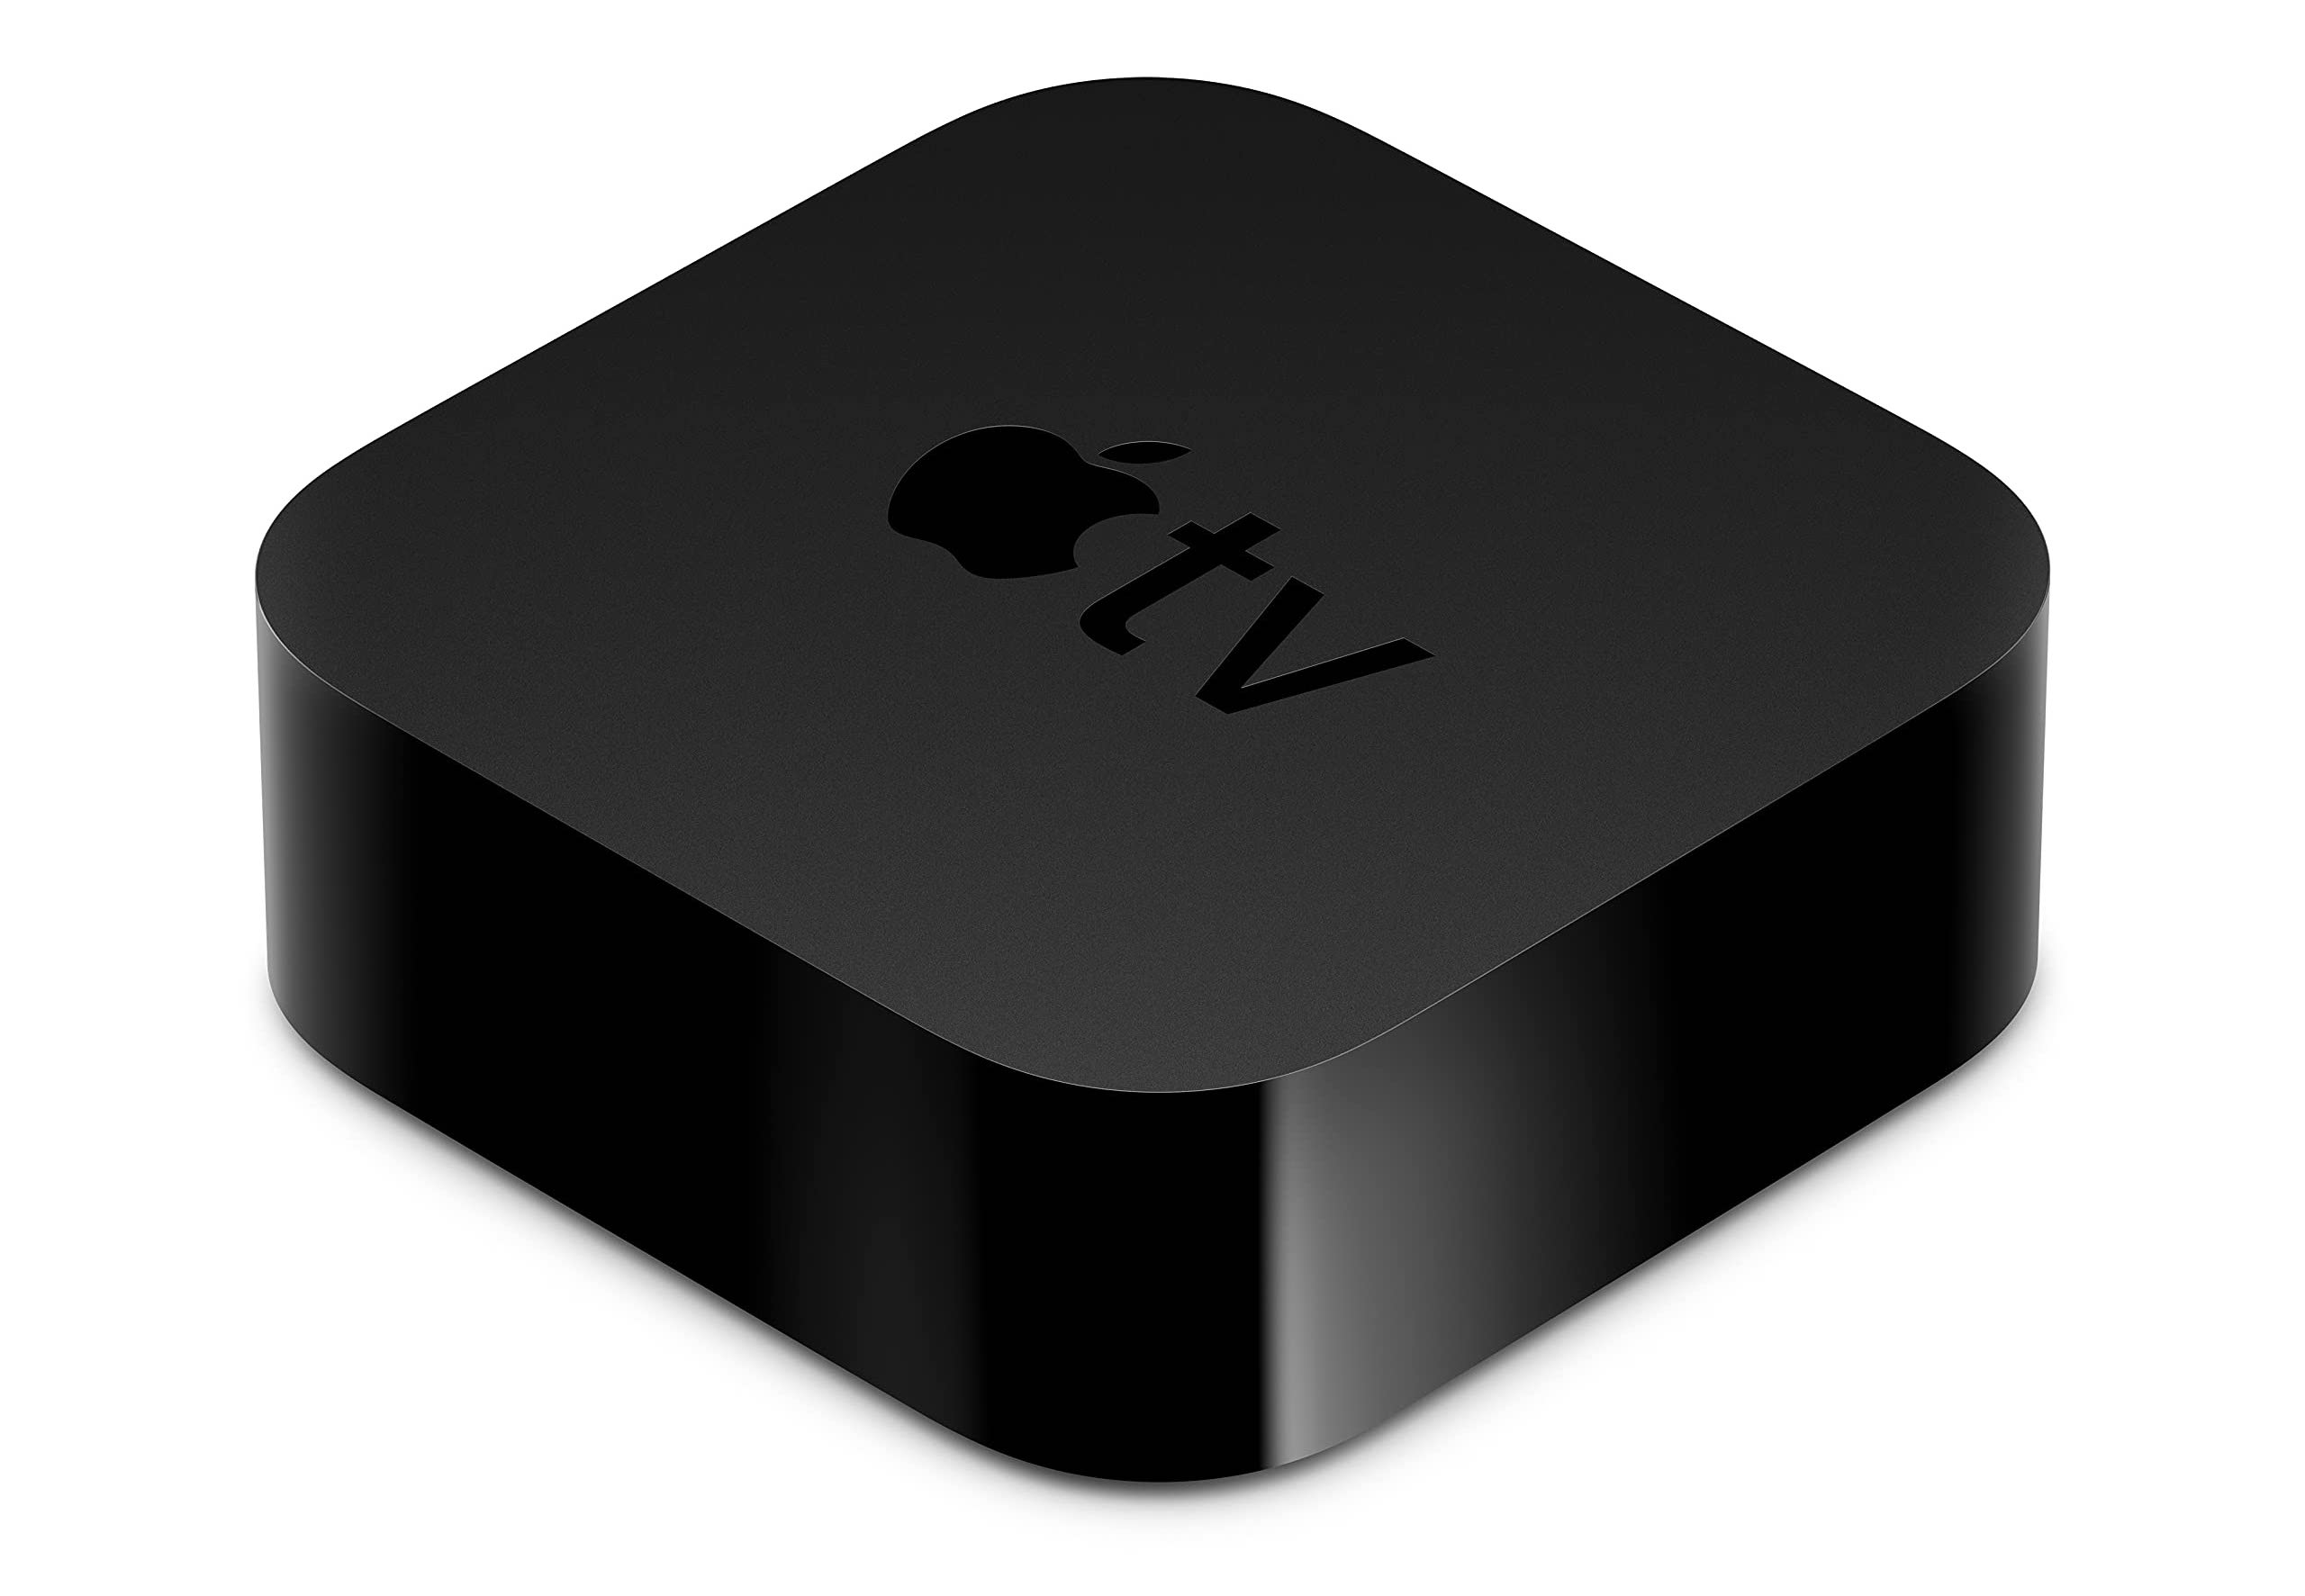 Cerebrum Efficiënt Ziektecijfers Review Apple TV 4K 2021 mediaspeler van Apple